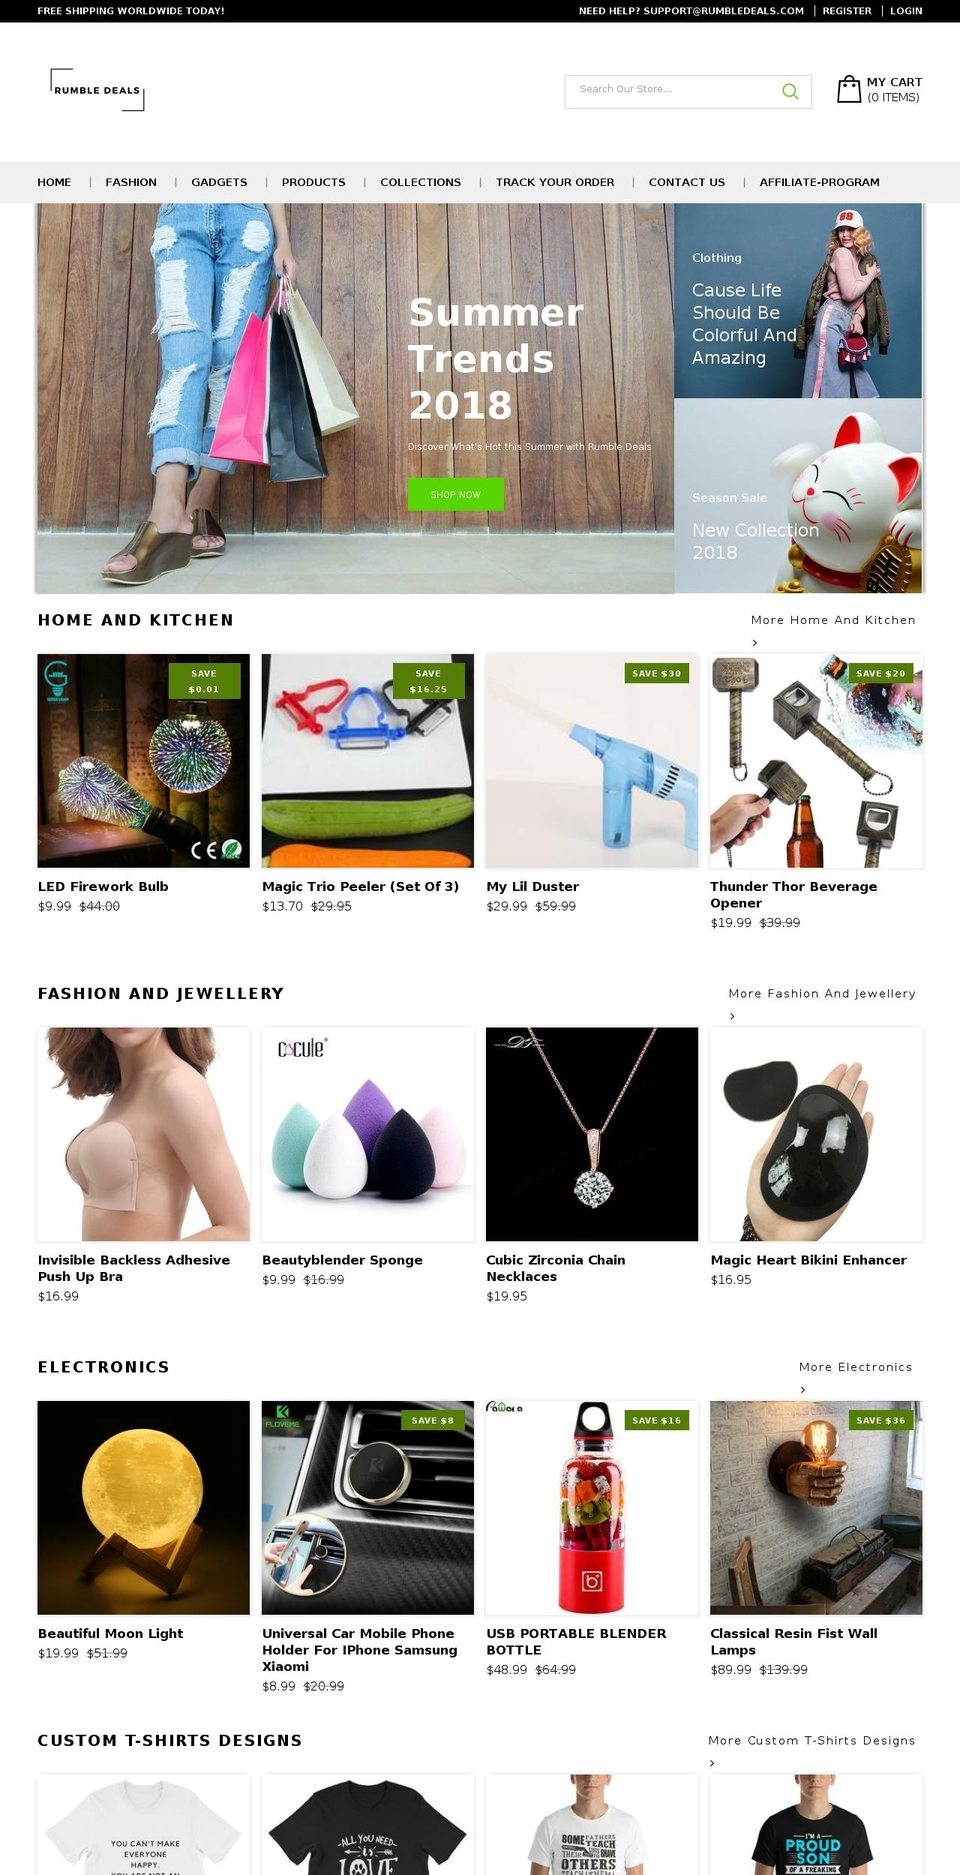 rumbledeals.com shopify website screenshot